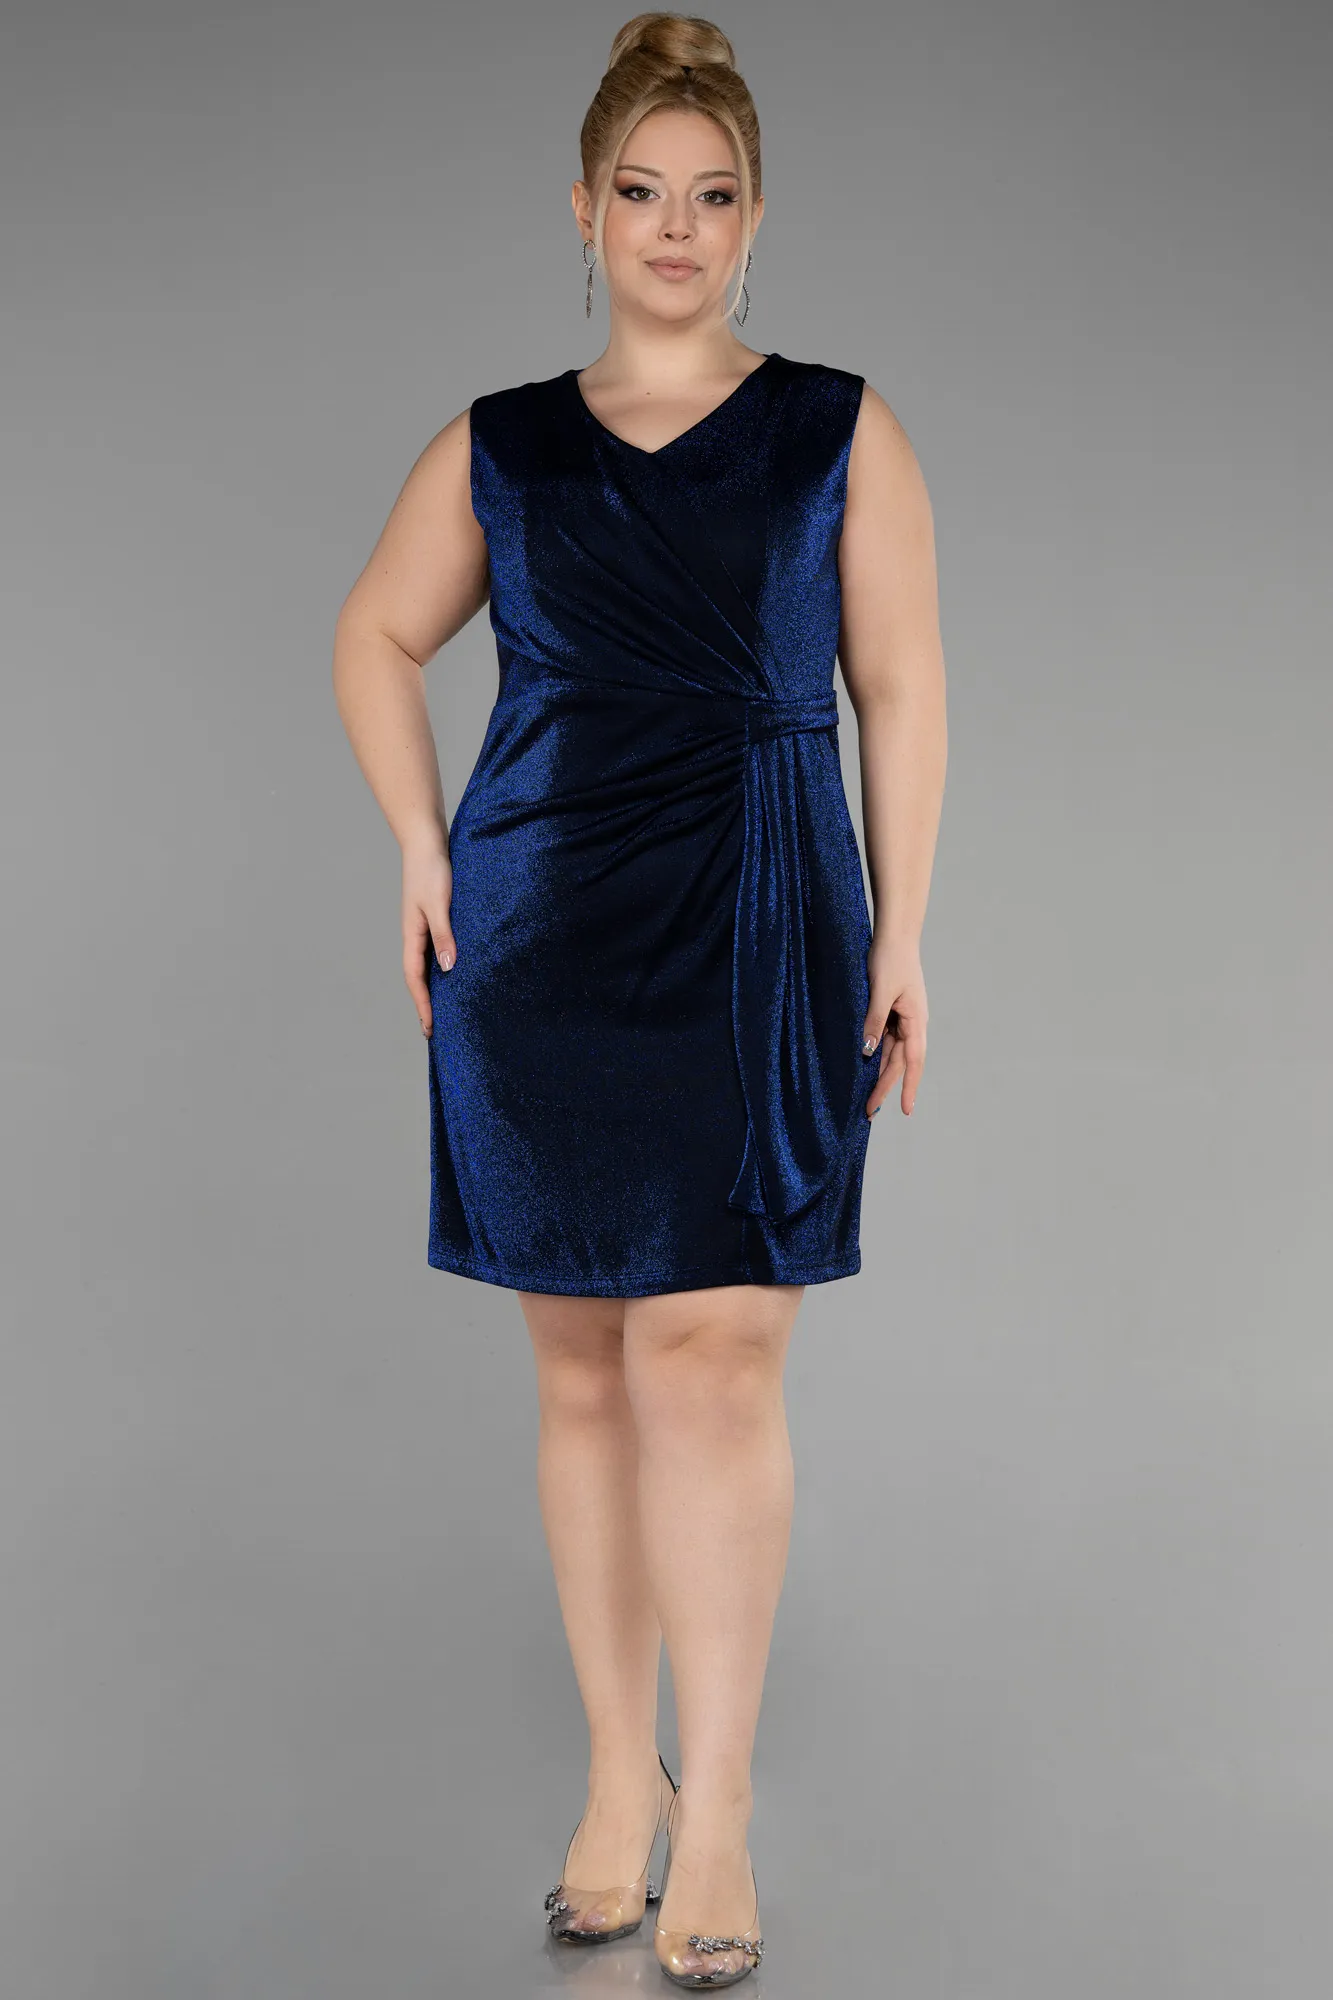 Sax Blue-Short Plus Size Cocktail Dress ABK1971